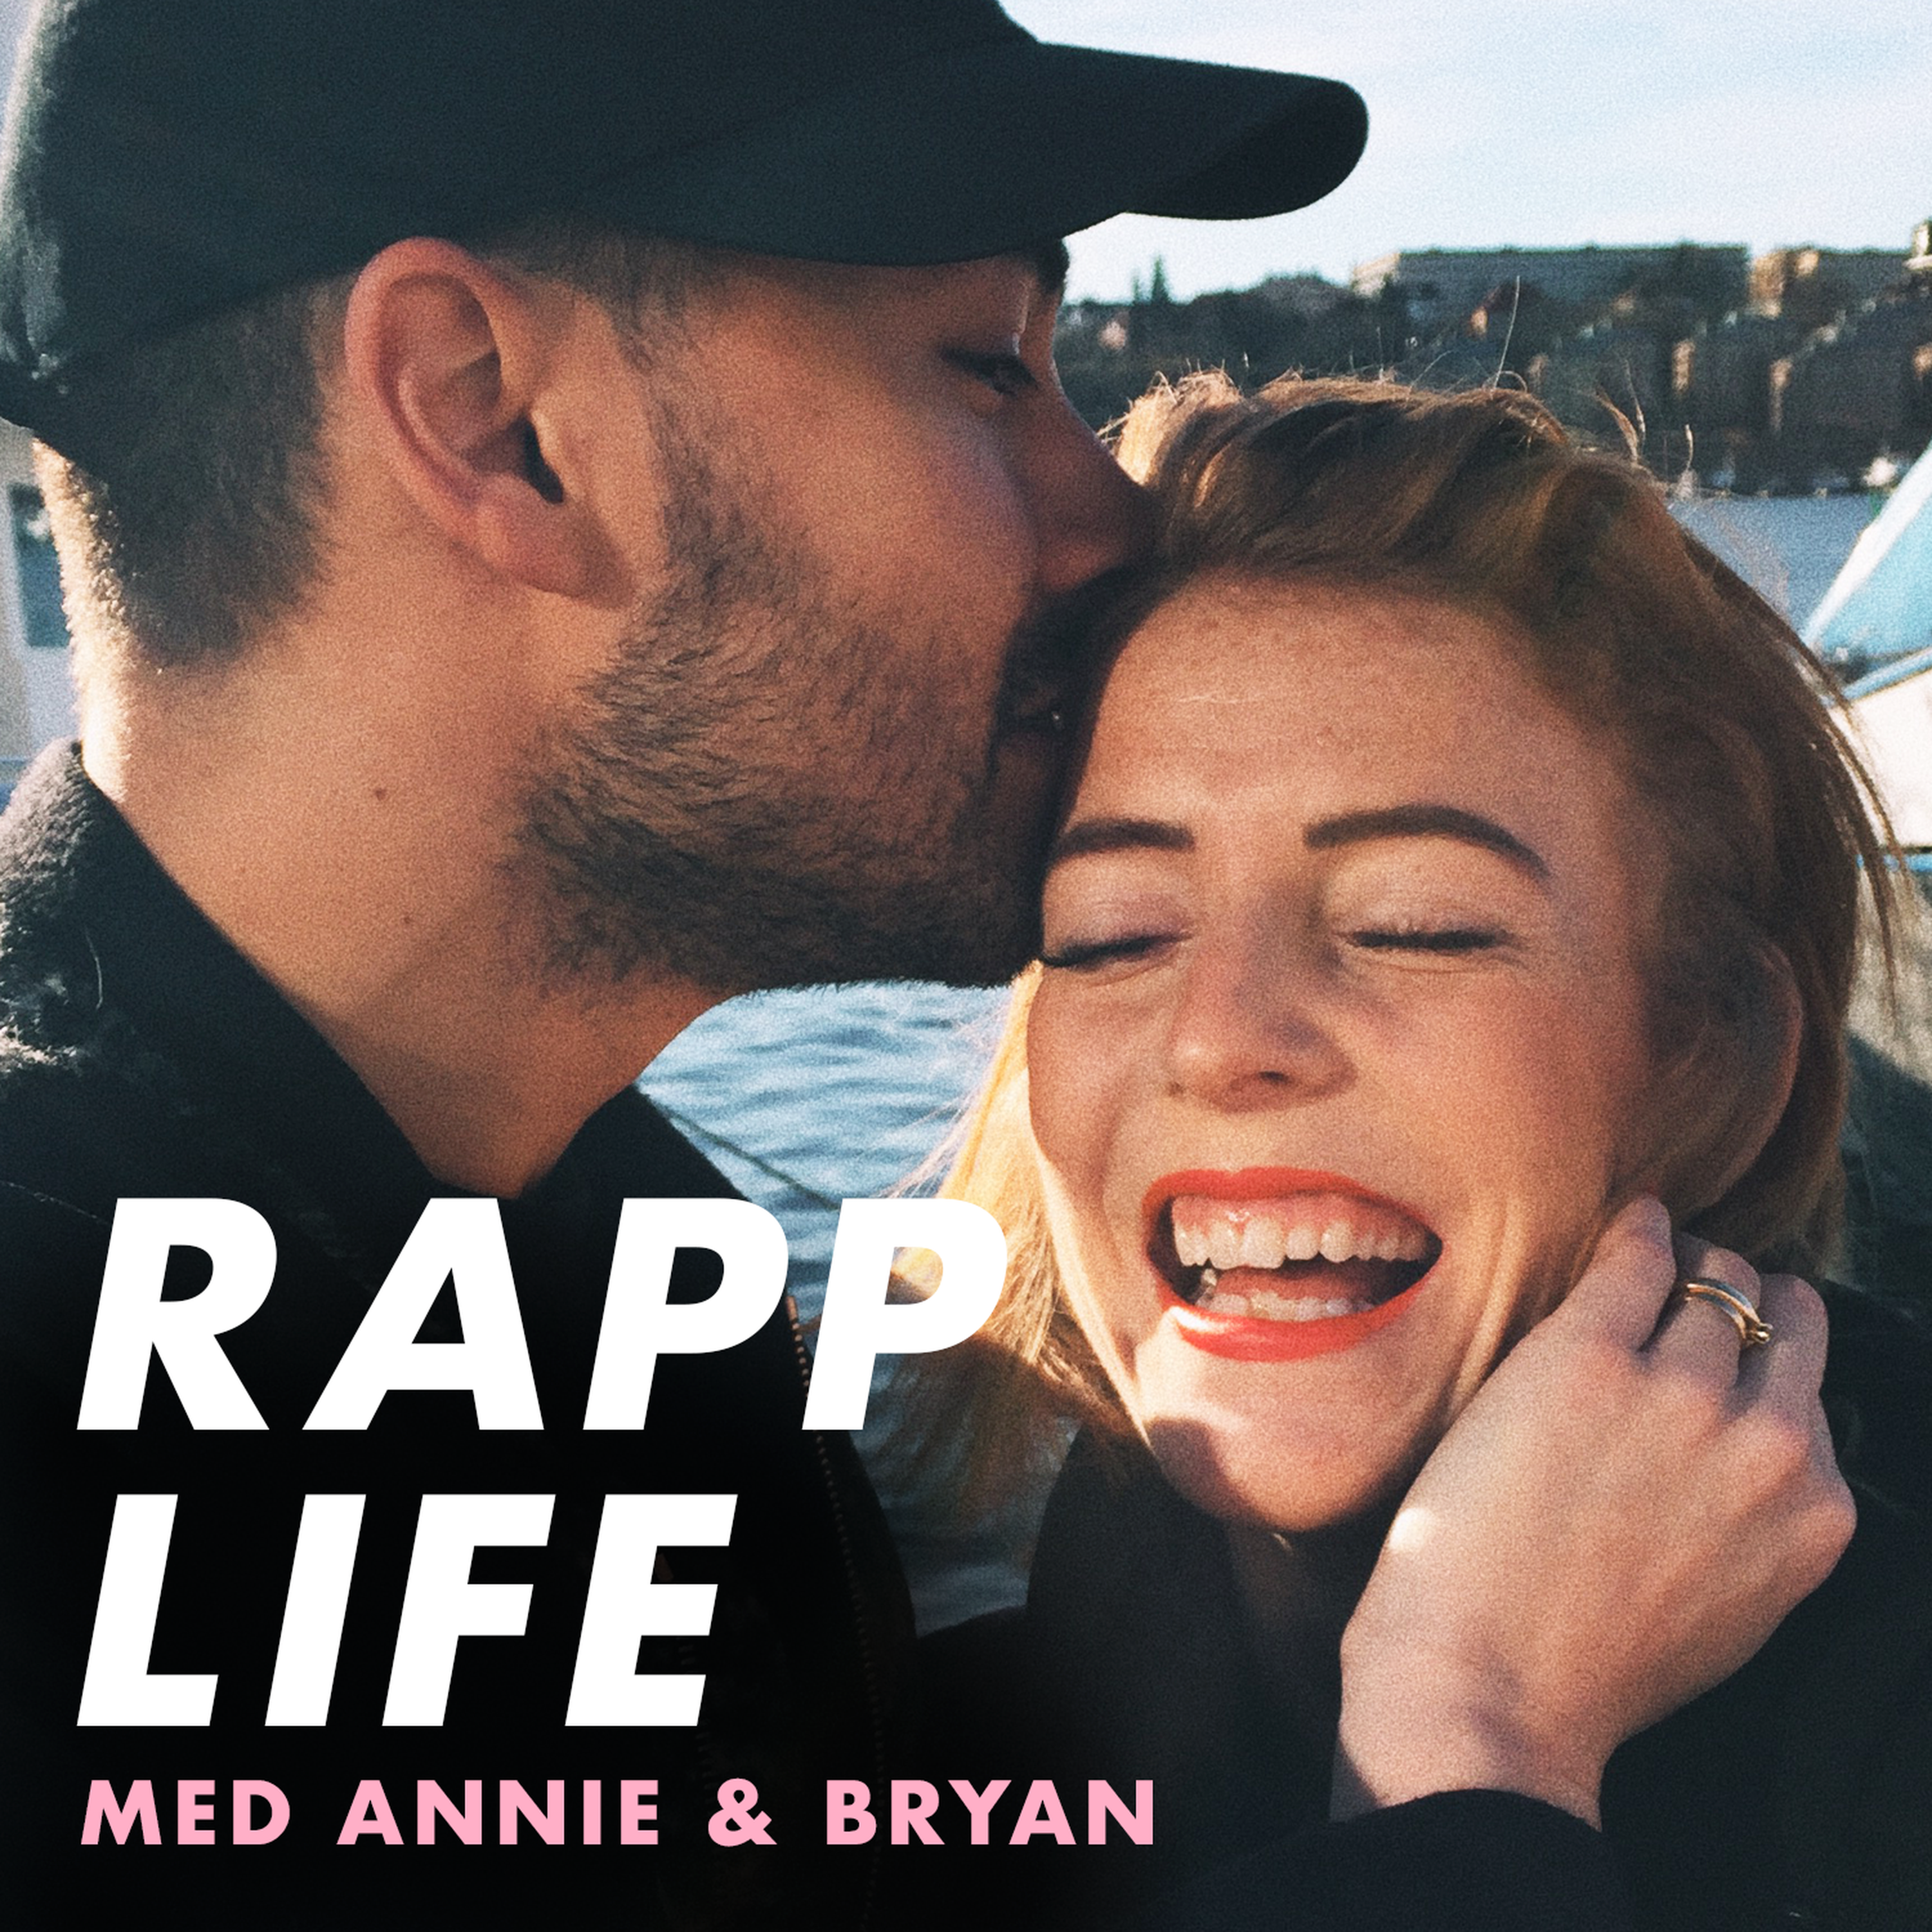 cover art for Rapp life trailer